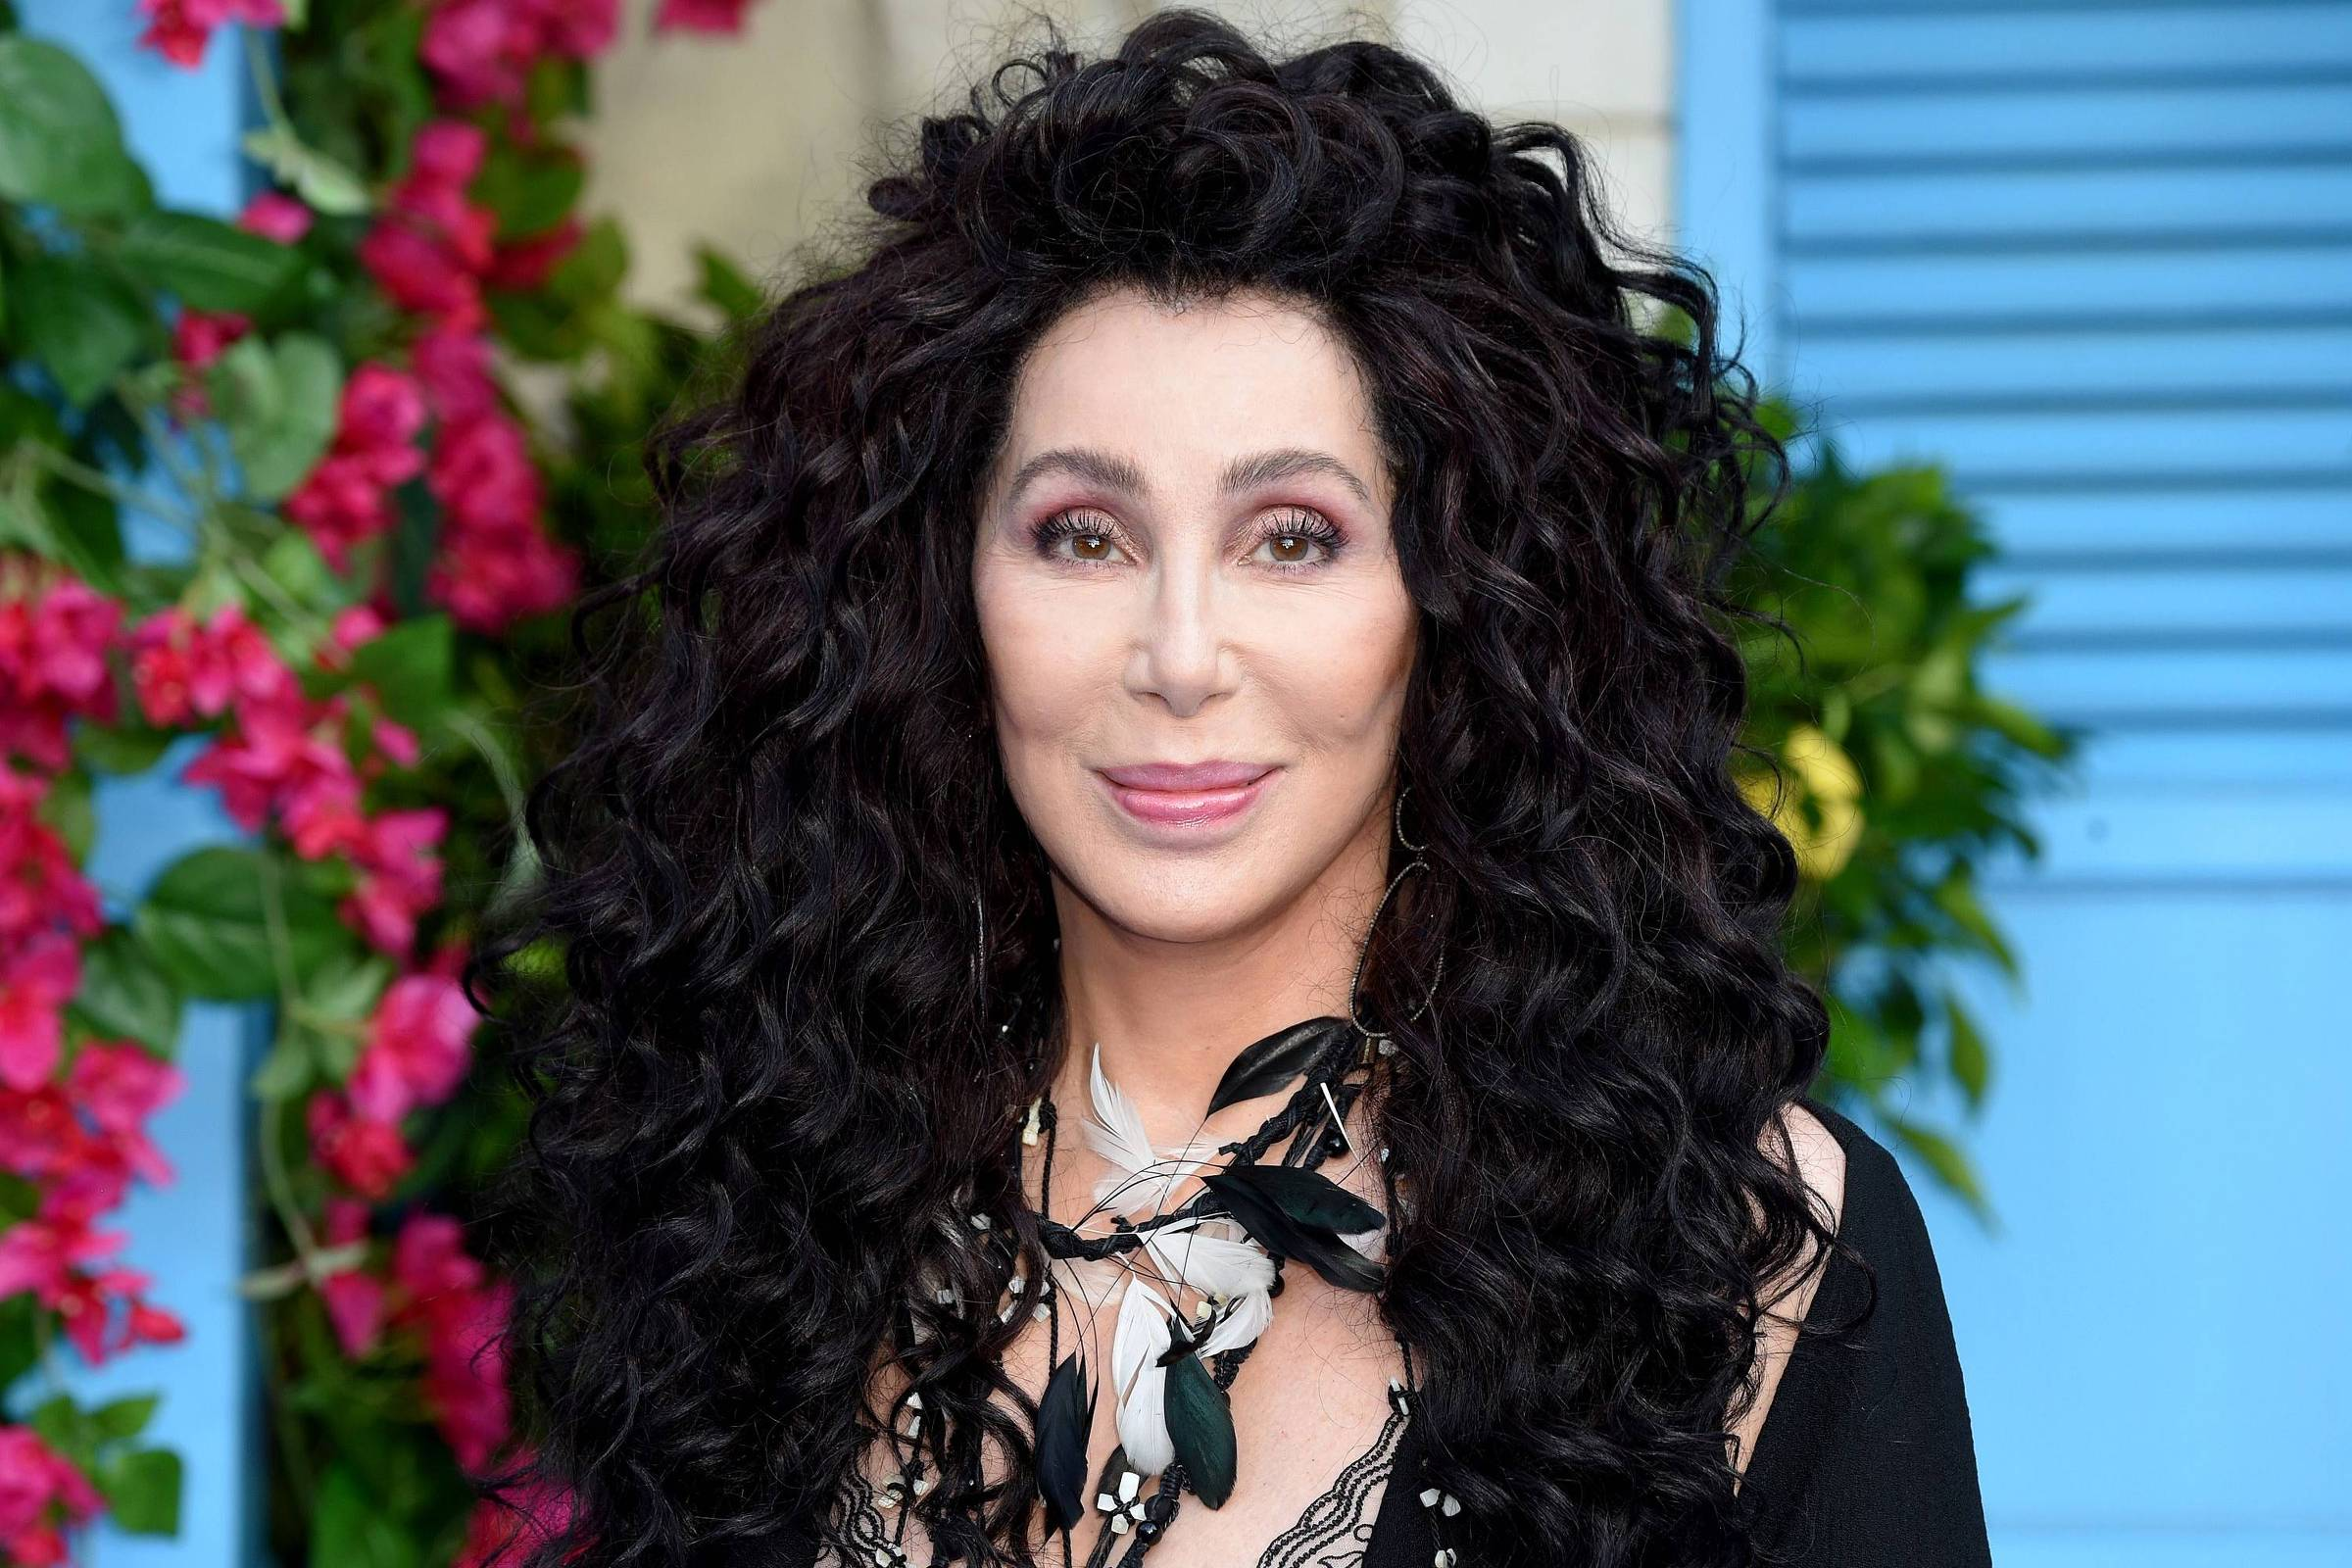 Cher detalha romance com astro de Top Gun: “Quente e intenso”